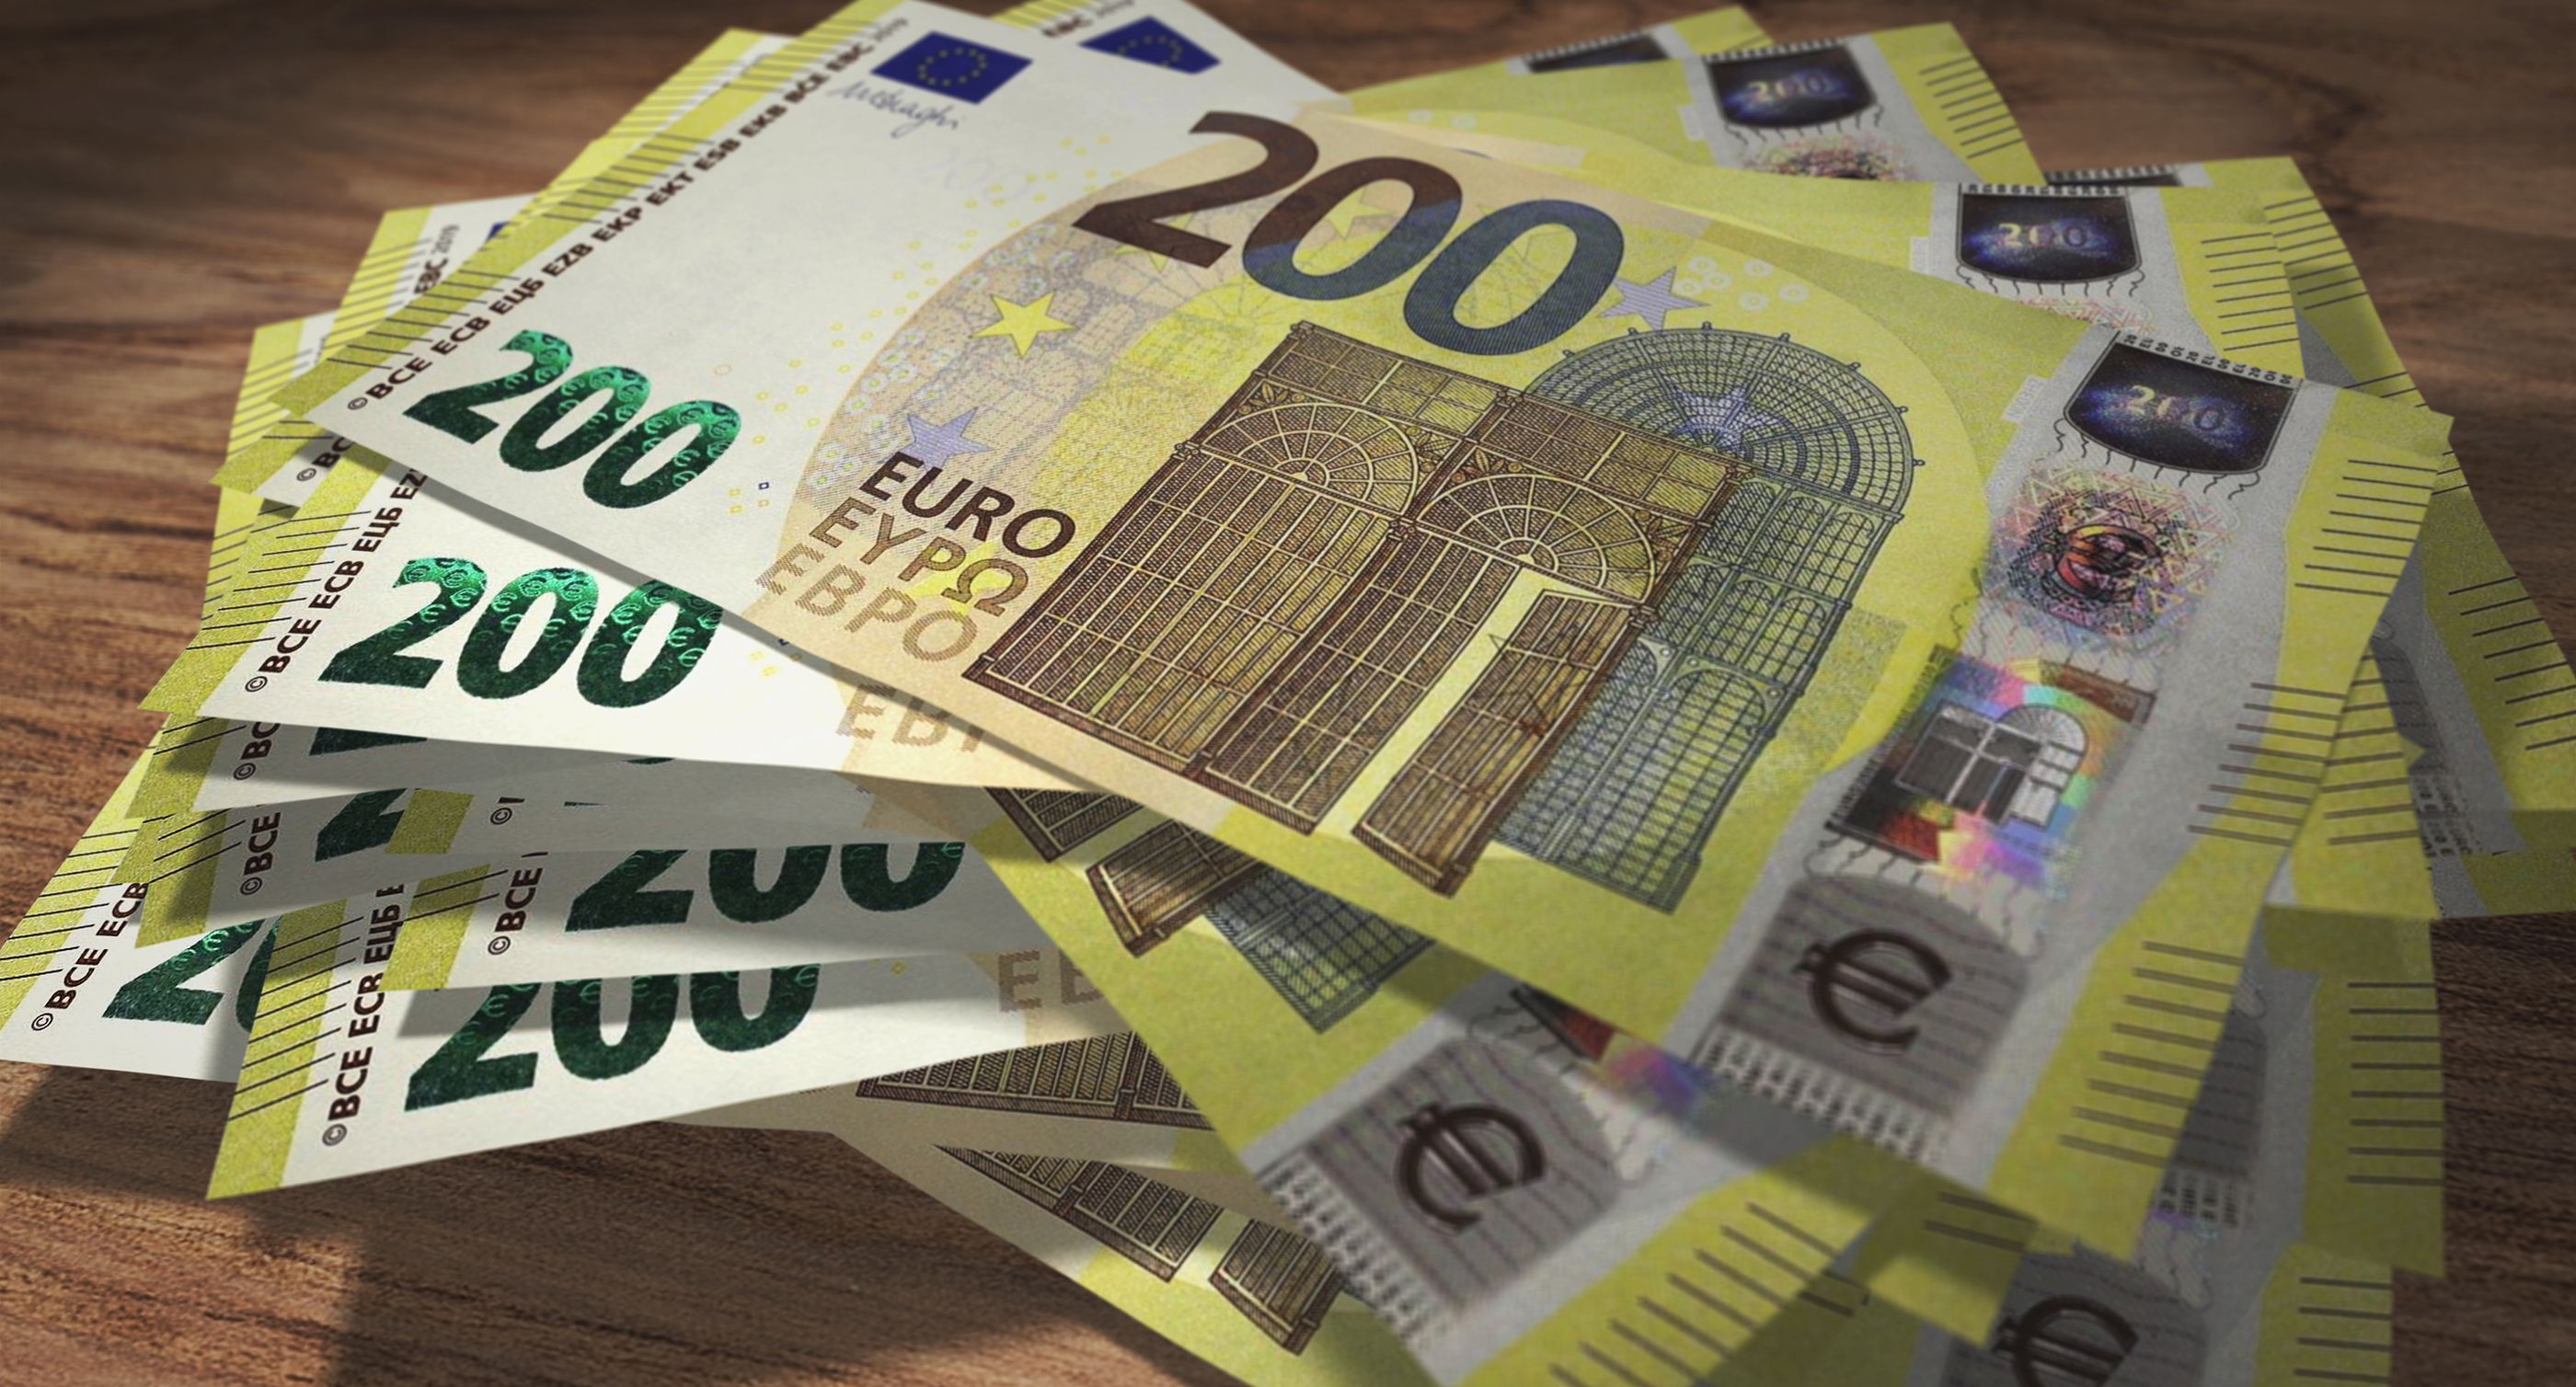 El cheque de 200 euros para la compra beneficiará a 8 millones de personas, según Gestha